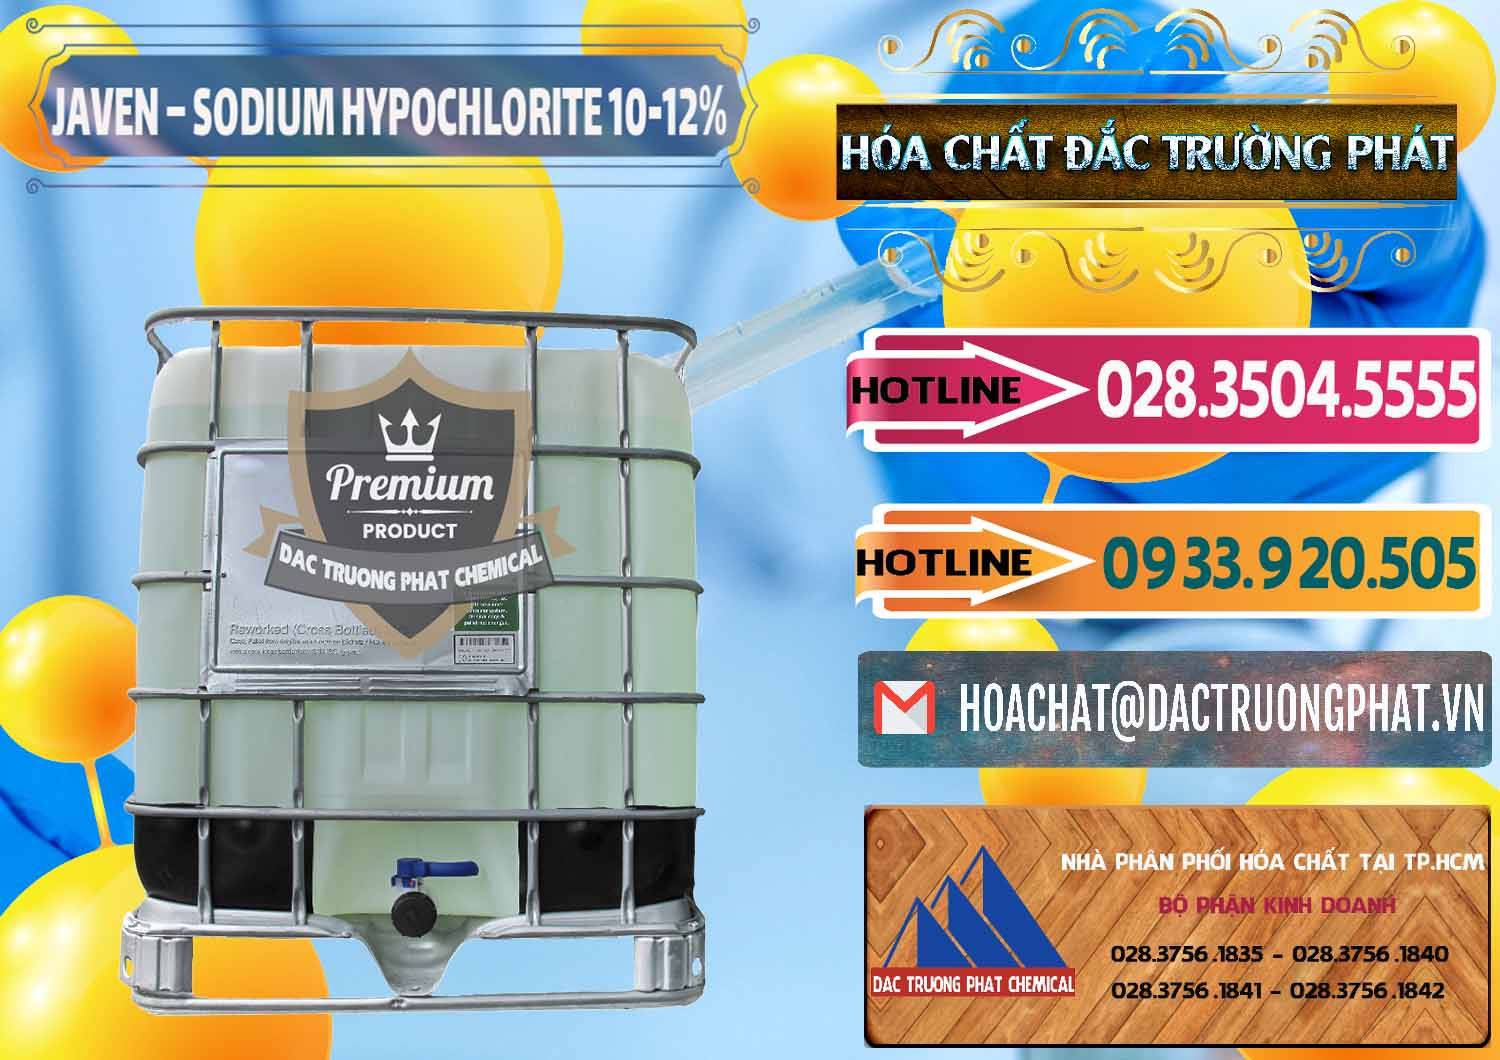 Nơi phân phối - cung cấp Javen - Sodium Hypochlorite 10-12% Việt Nam - 0188 - Công ty chuyên kinh doanh & cung cấp hóa chất tại TP.HCM - dactruongphat.vn